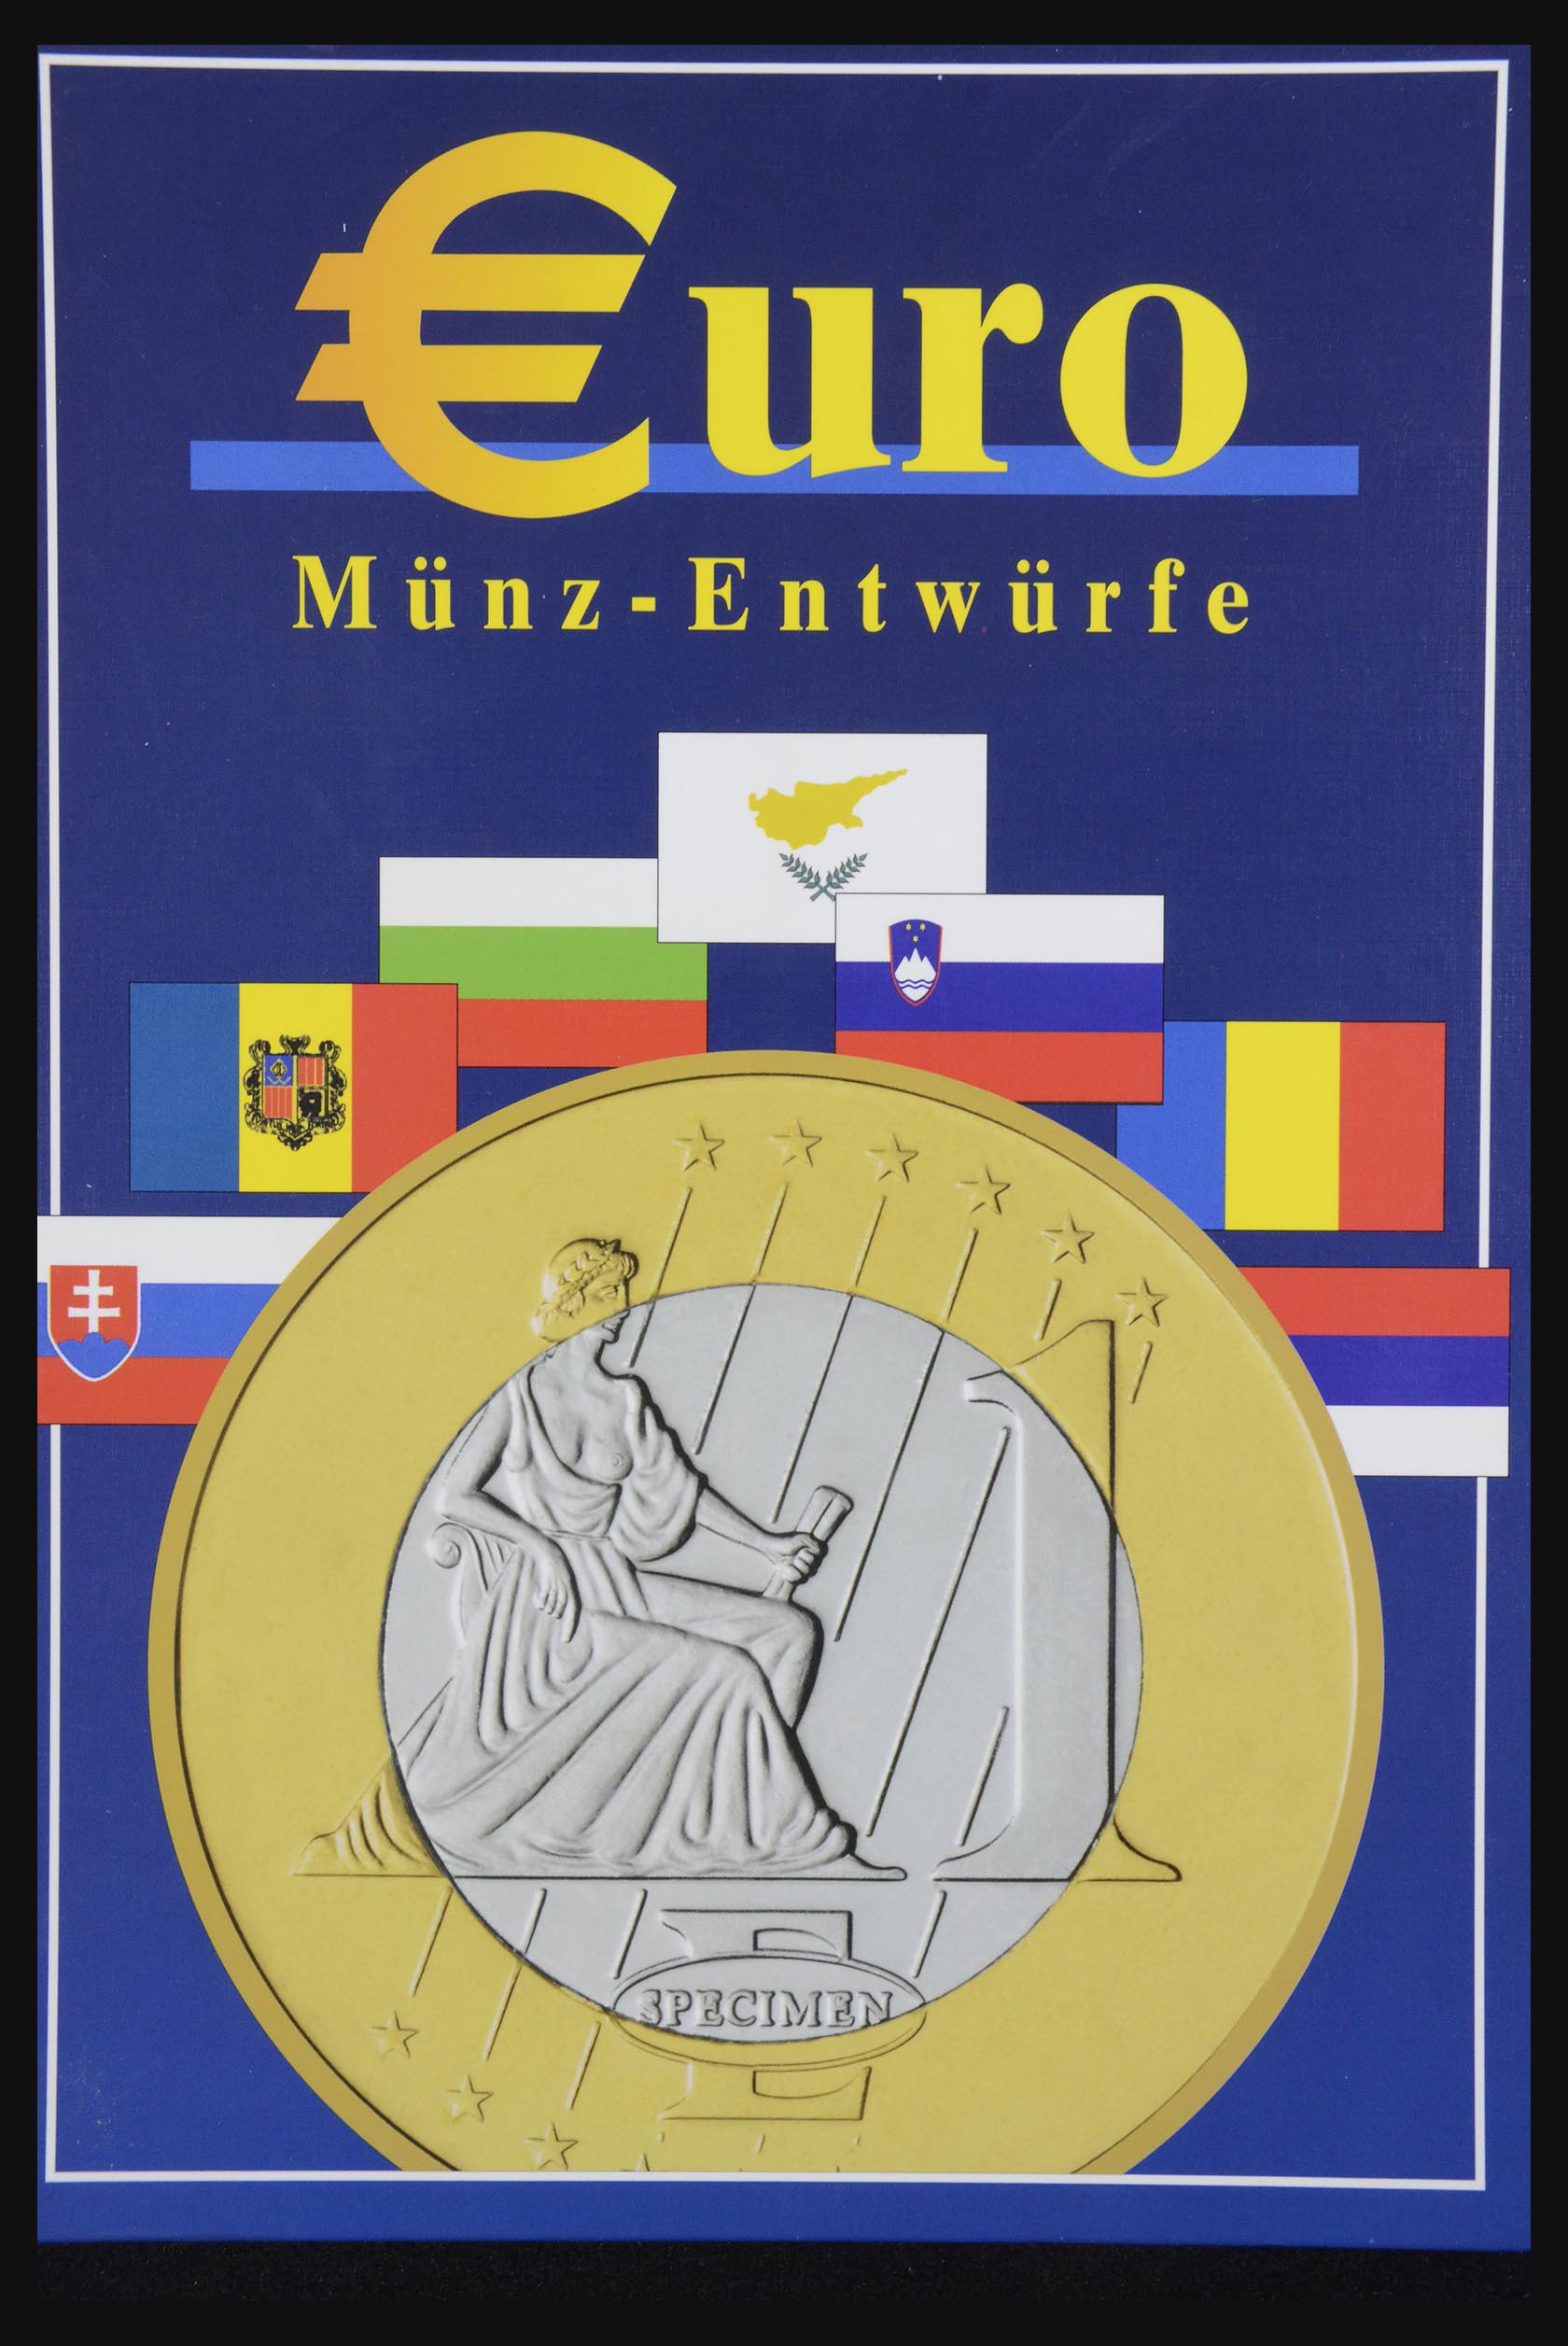 32149 036 - 32149 European countries eurocoins 2003.